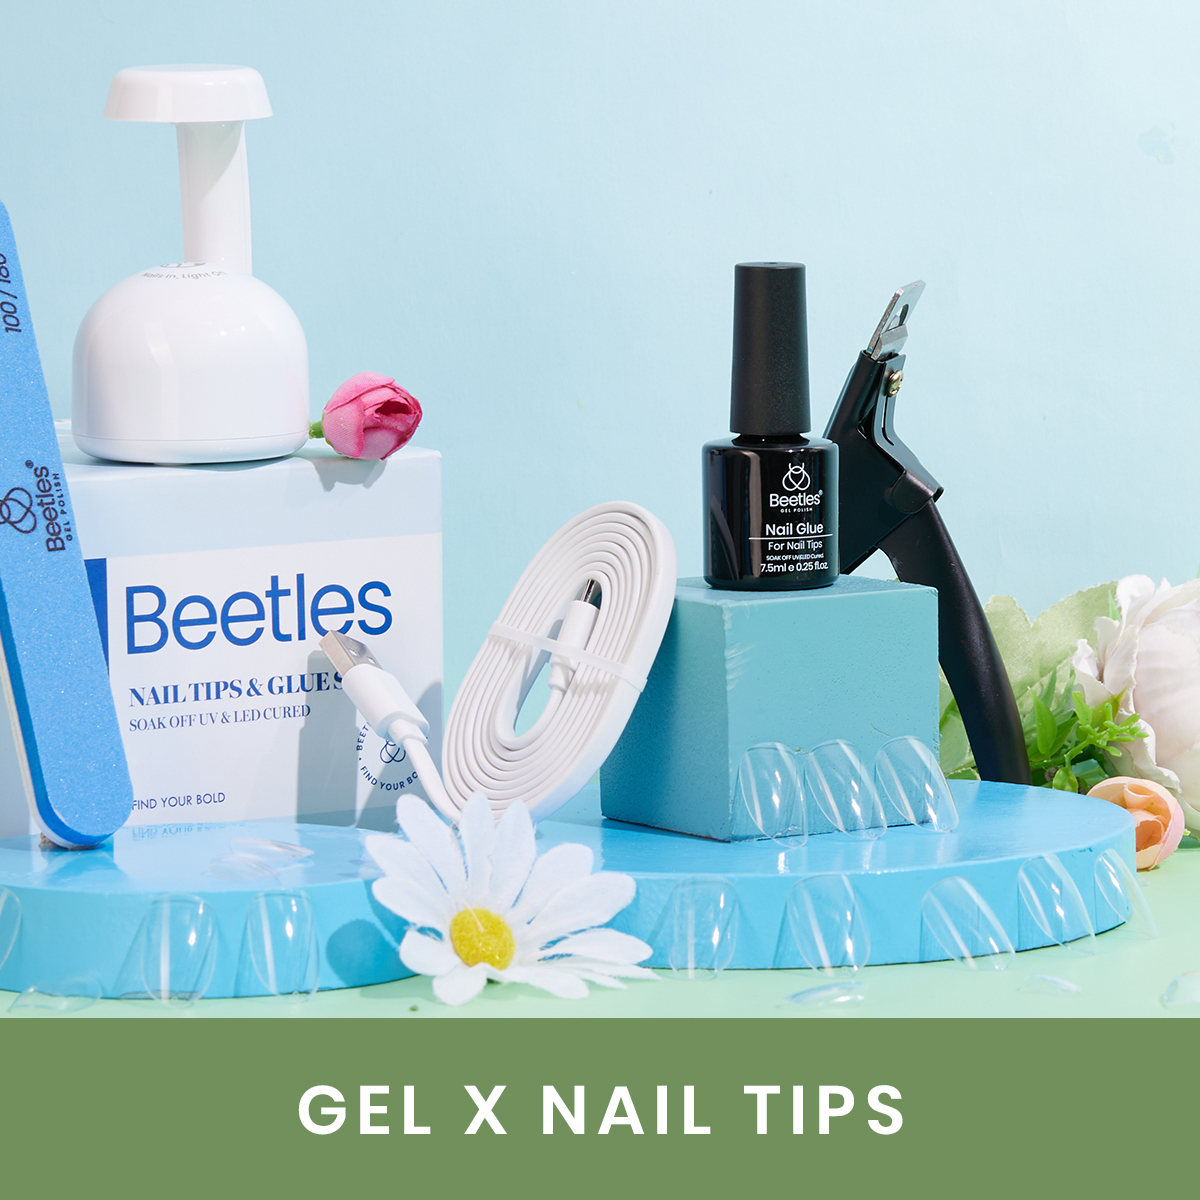 AIBRIT Nail Tips & Glue Gel x Nail Kit,15ML 6 In 1 Nail Glue Gel and 550Pcs  Coffin Nails and Portable UV LED Lamp, Gel Extension Nail Kit Home Nail DIY  Tools